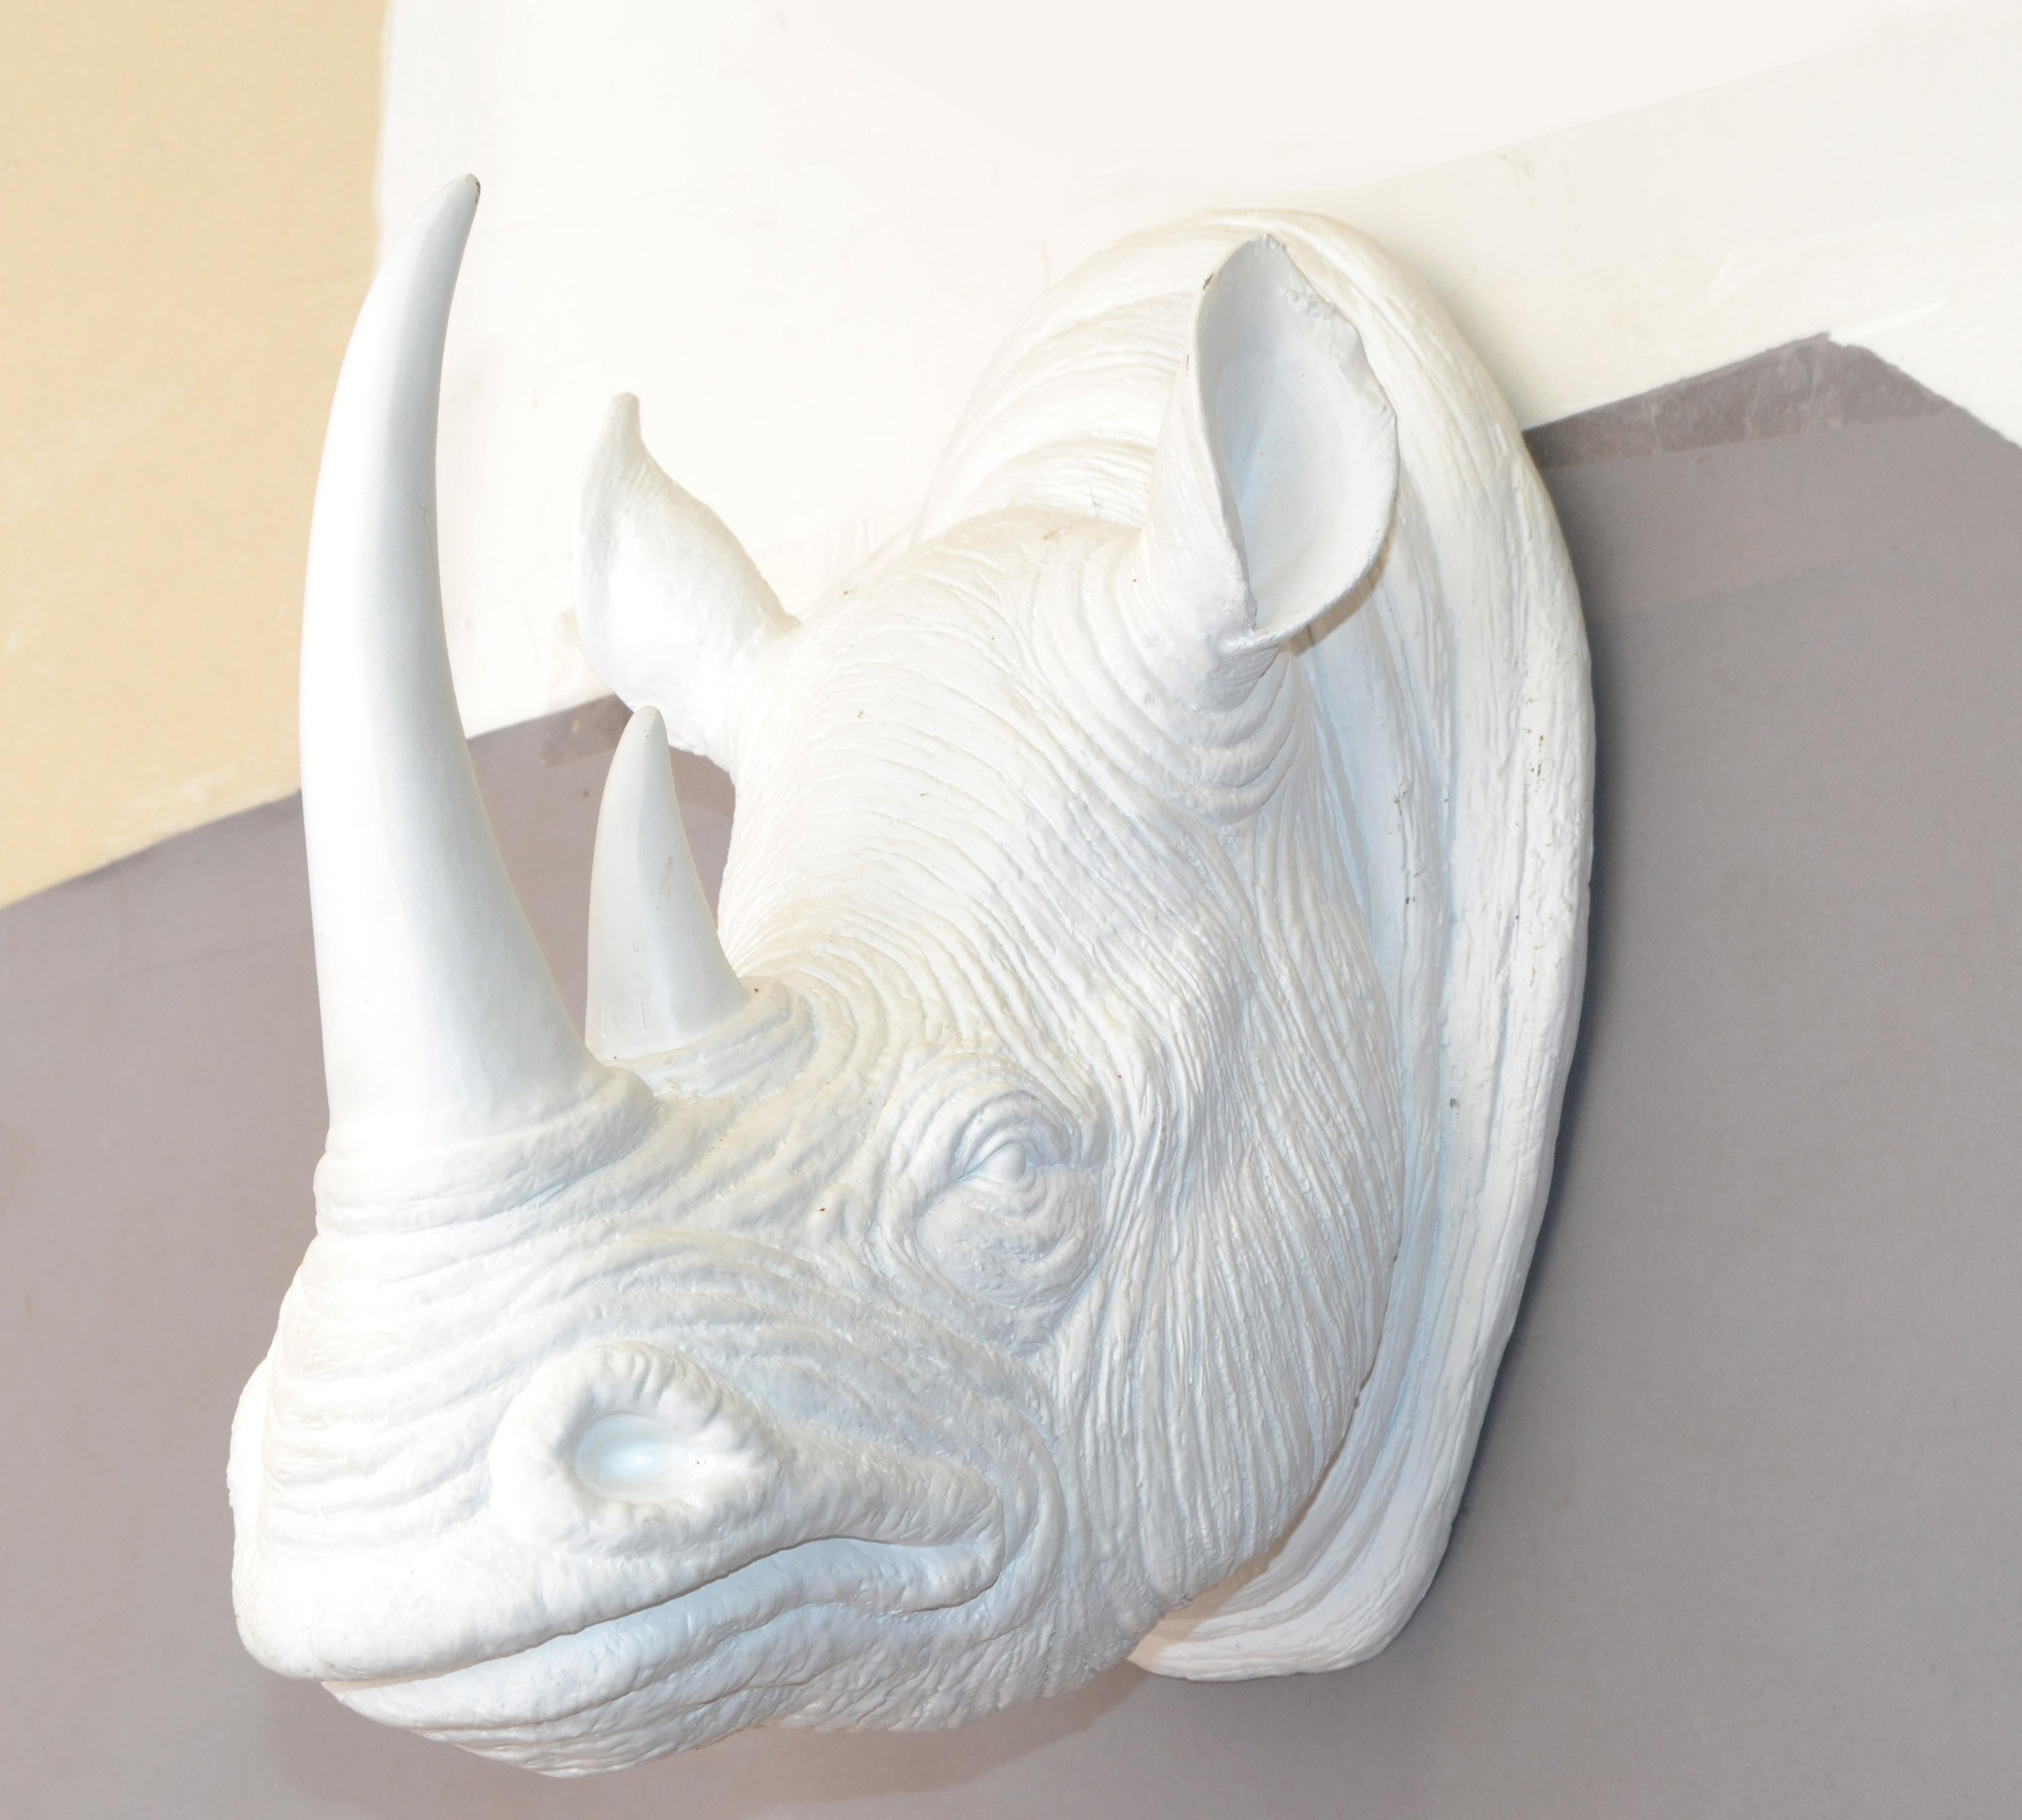 Dies ist eine gefälschte Taxidermie Nashorn Kopf, gefälschte Trophäe Kopf, Wand montiert Tier-Skulptur aus Harz und gemalt in einem off-weiß emailliert.
Beachten Sie die echten Falten der Haut und die Details an den Nashornohren und der